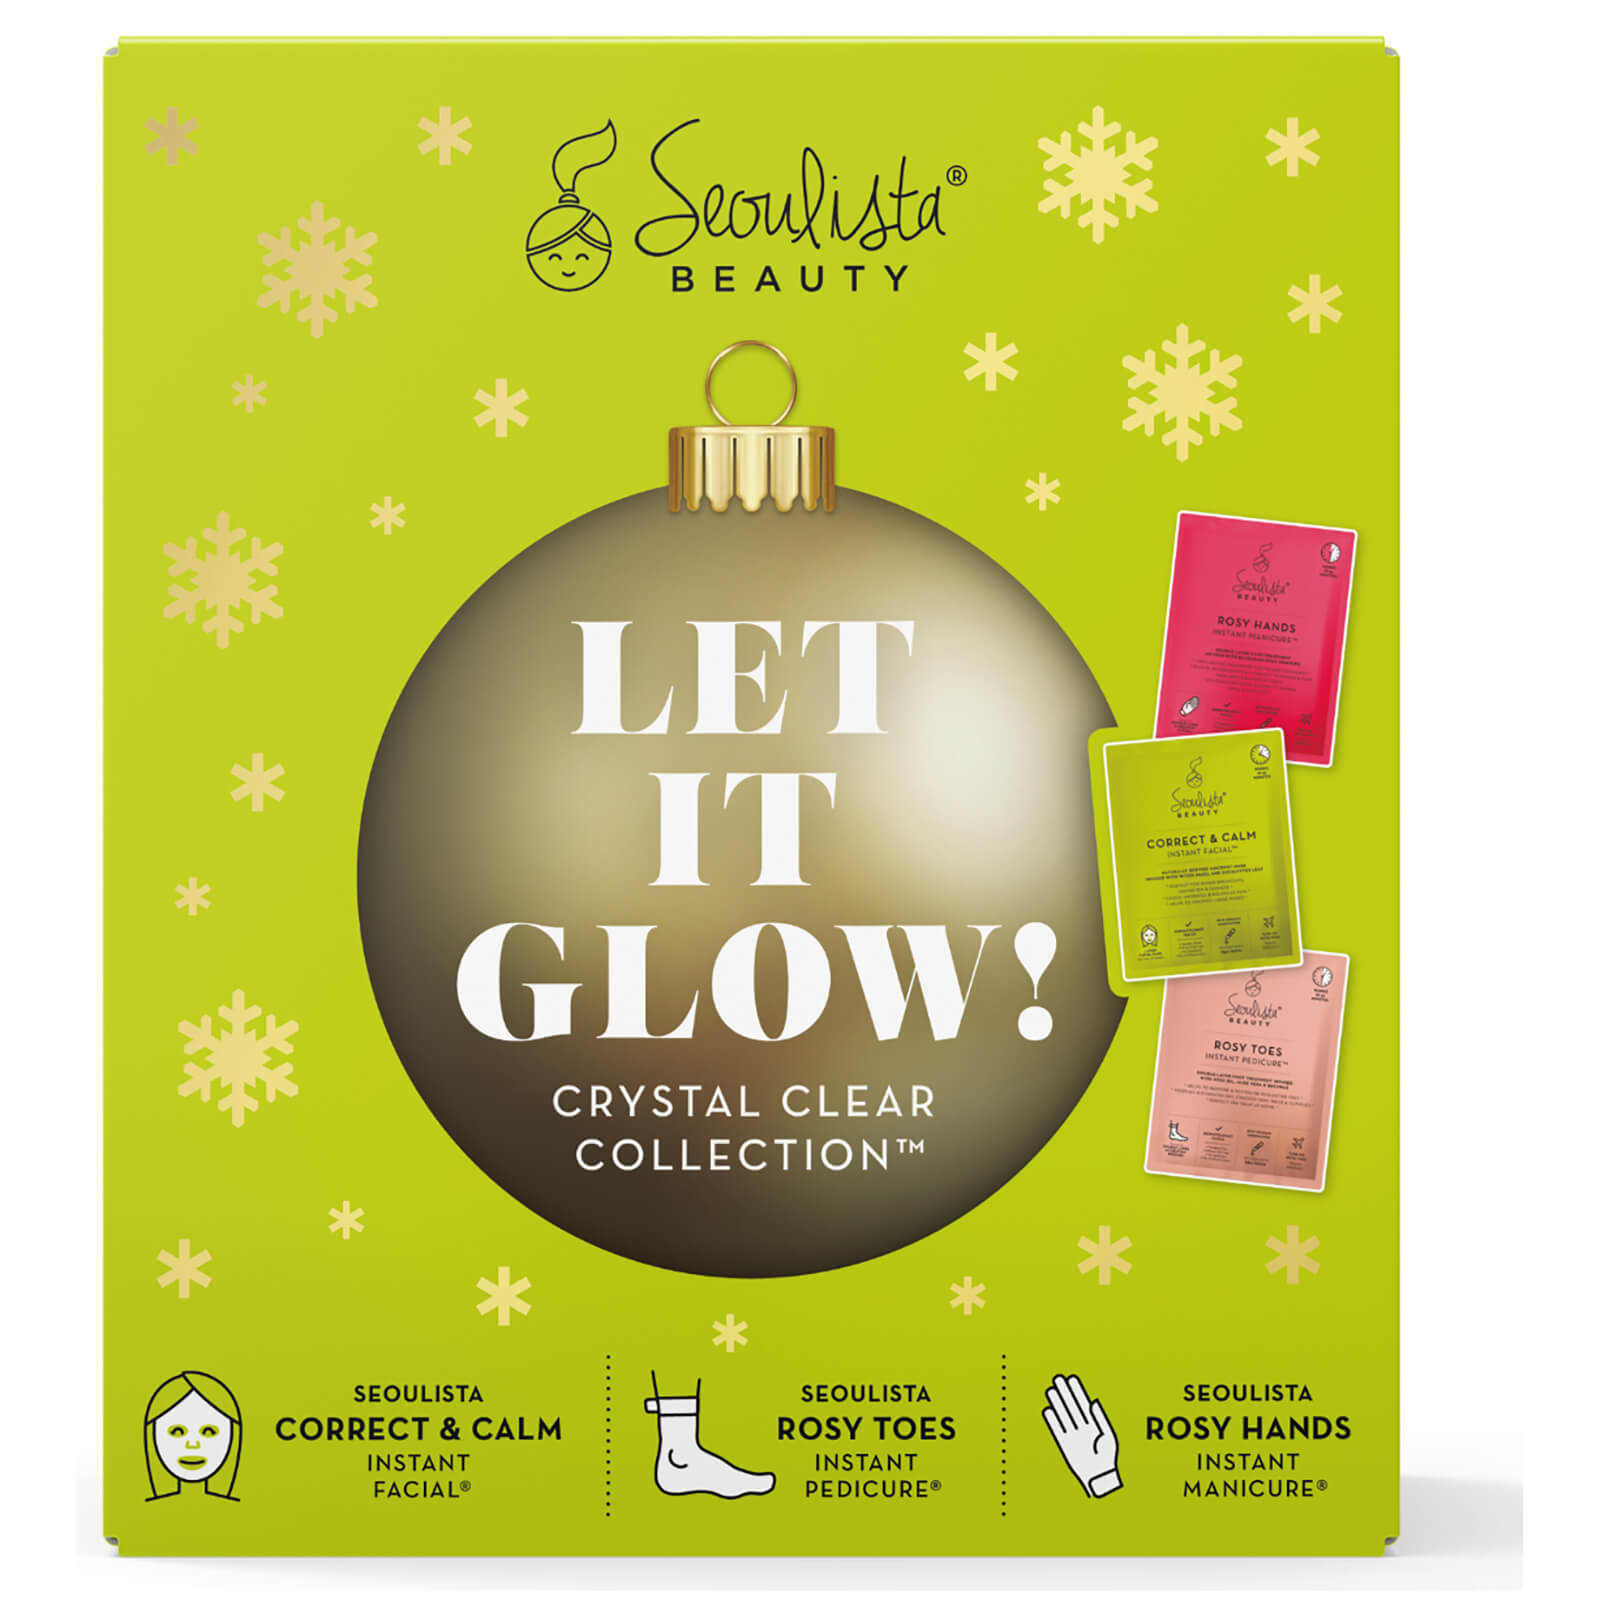 Pack de Navidad de Seoulista Beauty - ¡Déjalo brillar! Colección Crystal Clear